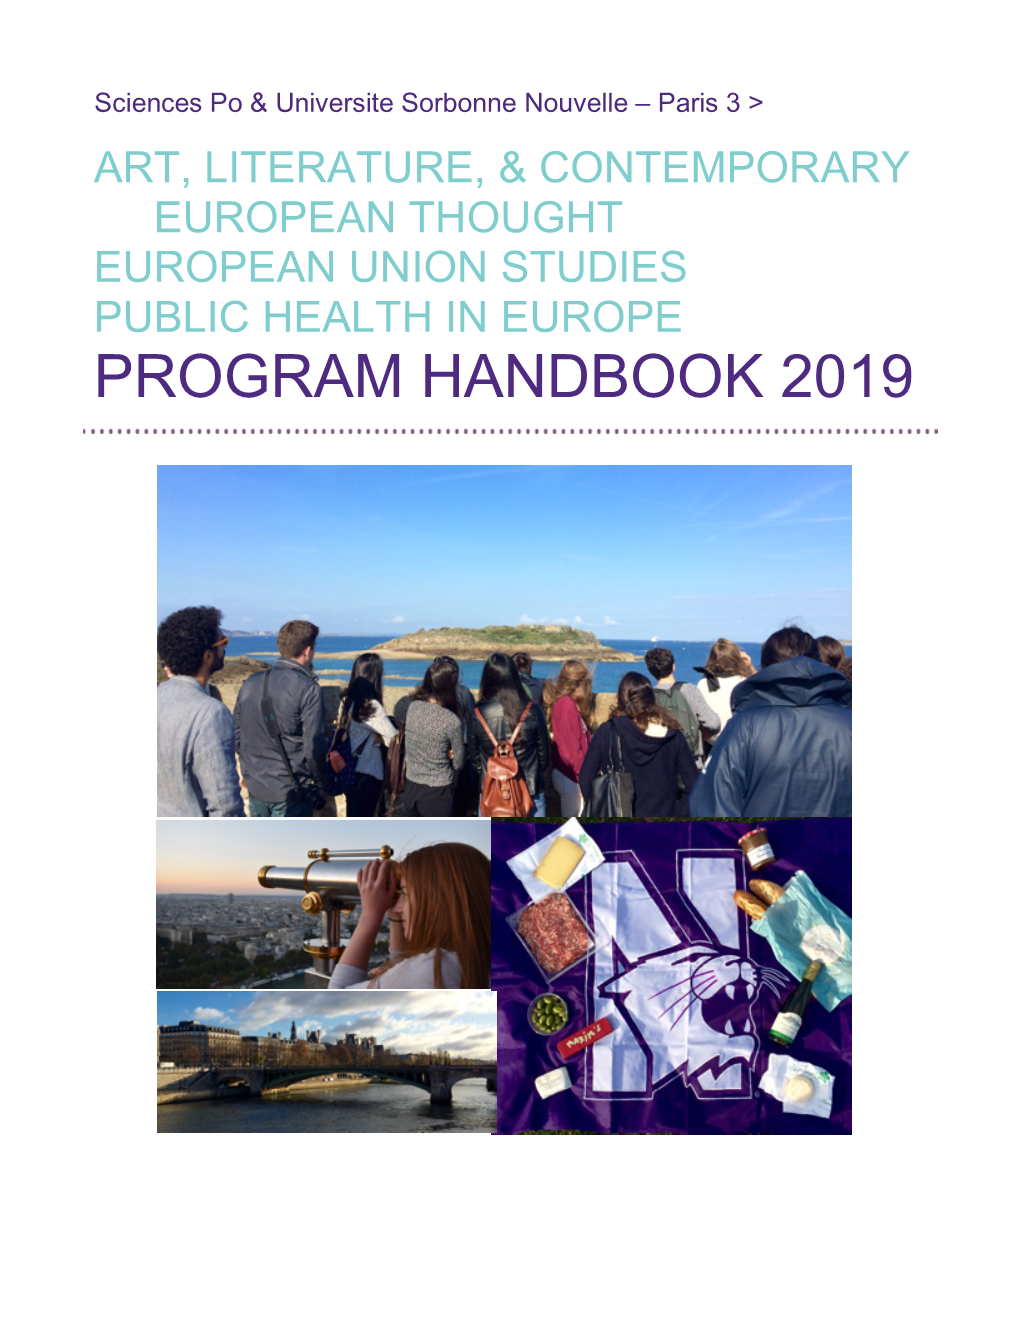 Program Handbook 2019